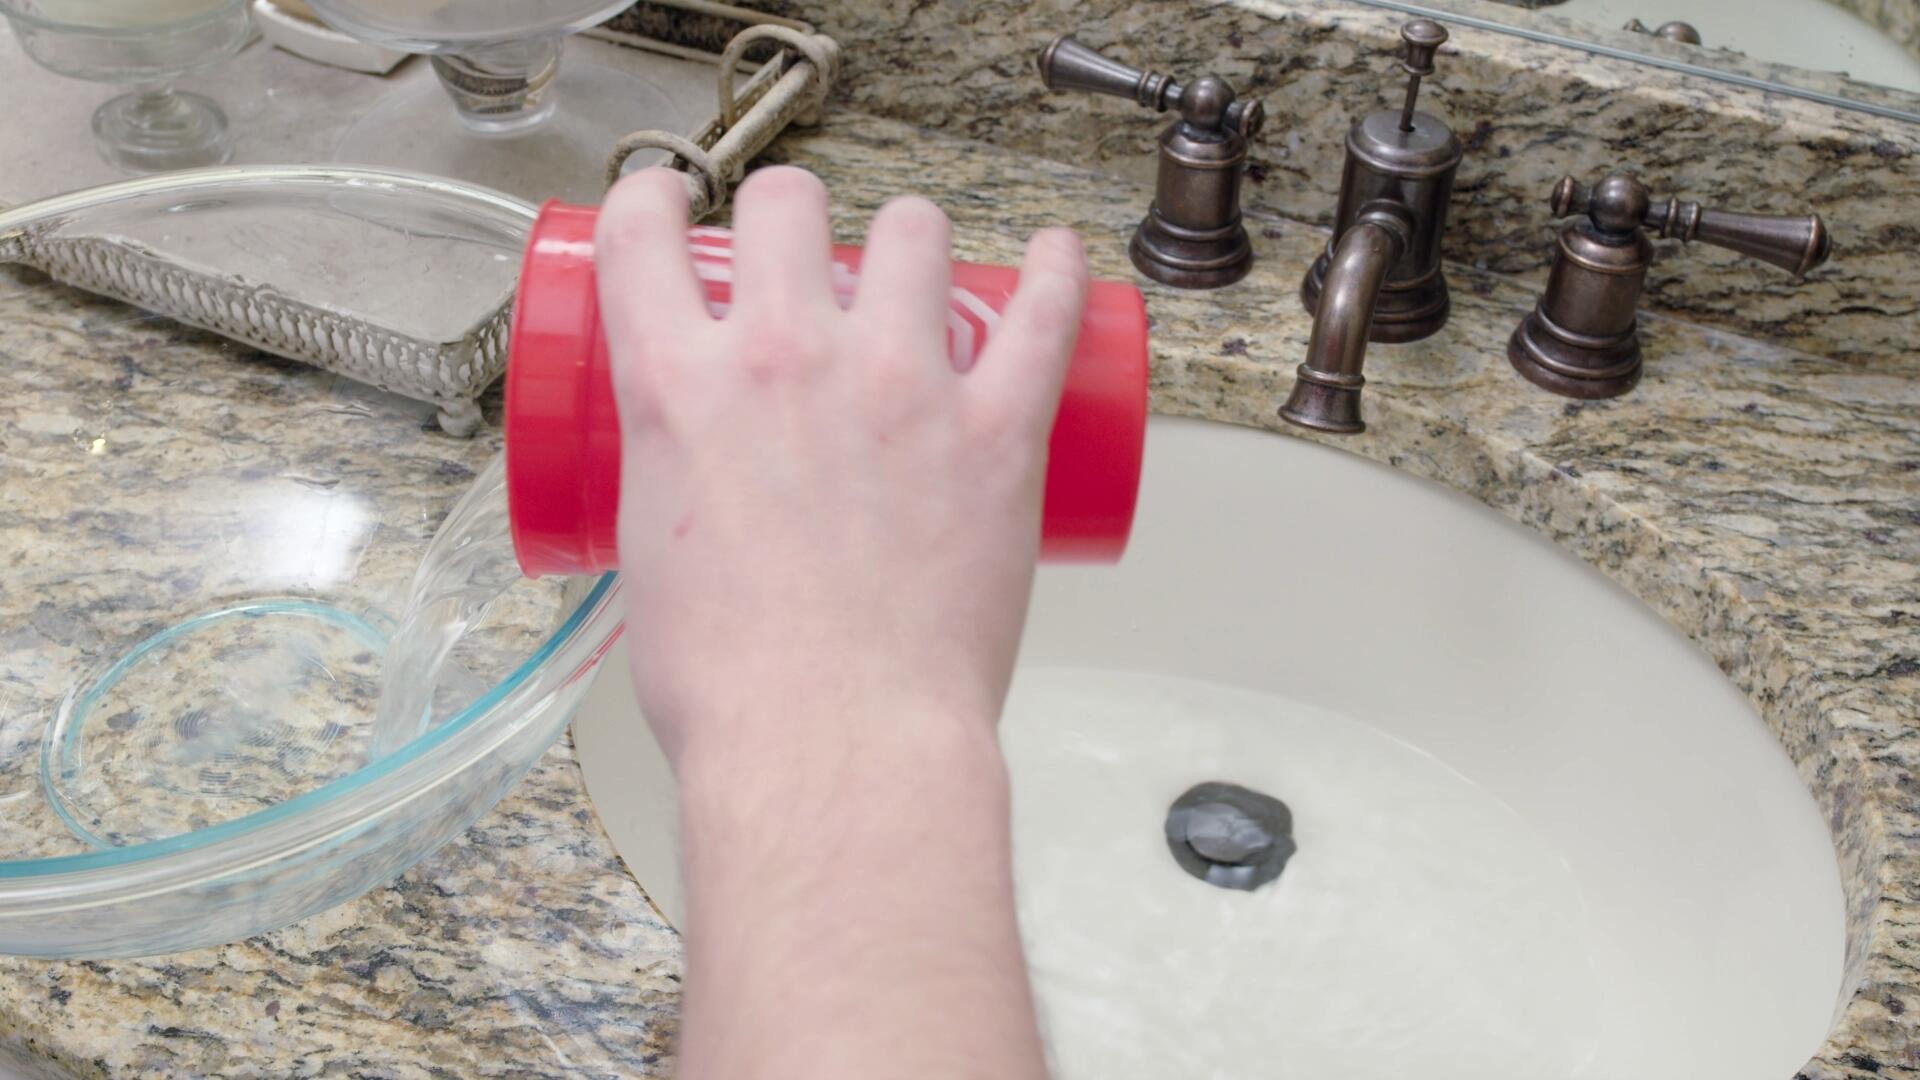 water in bathroom sink not draining